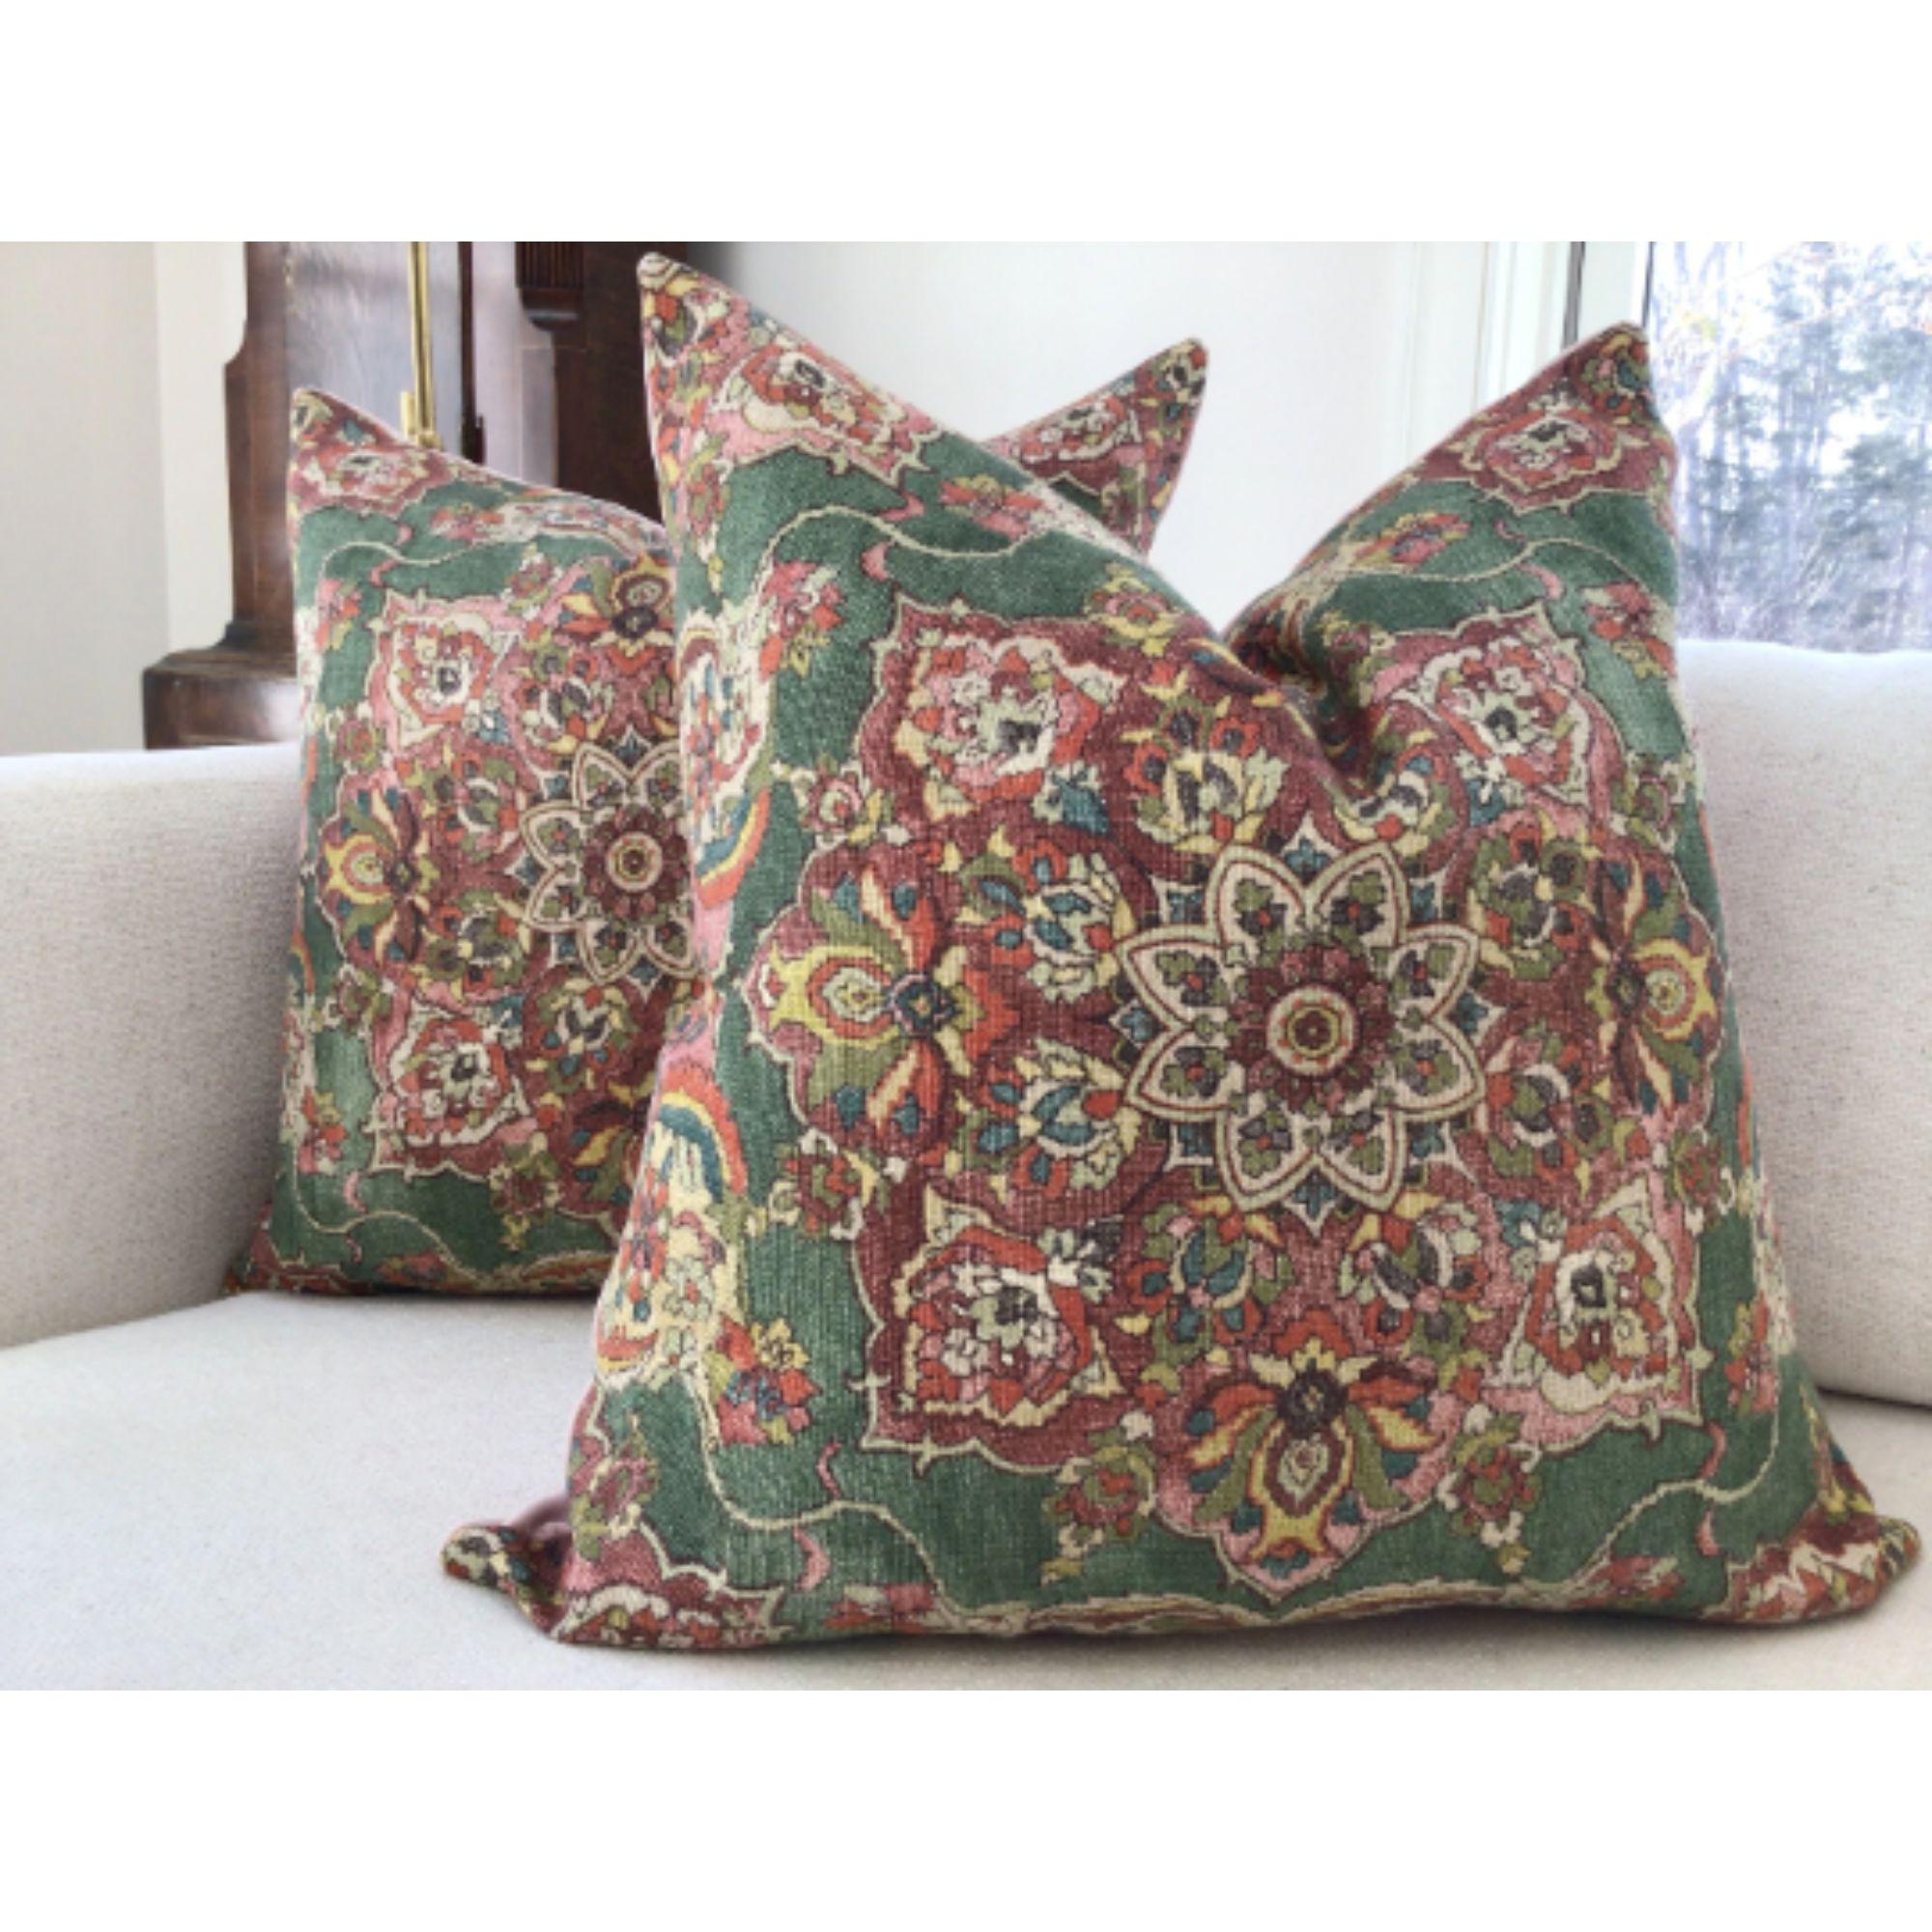 Comme un joli tapis persan ancien... Granada in Jewell présente un médaillon central avec de riches détails dans des tons de vert émeraude, d'épice, de rubis et de rose.

Charmant.

Ils seront présentés en paire de 22 pouces avec des inserts en